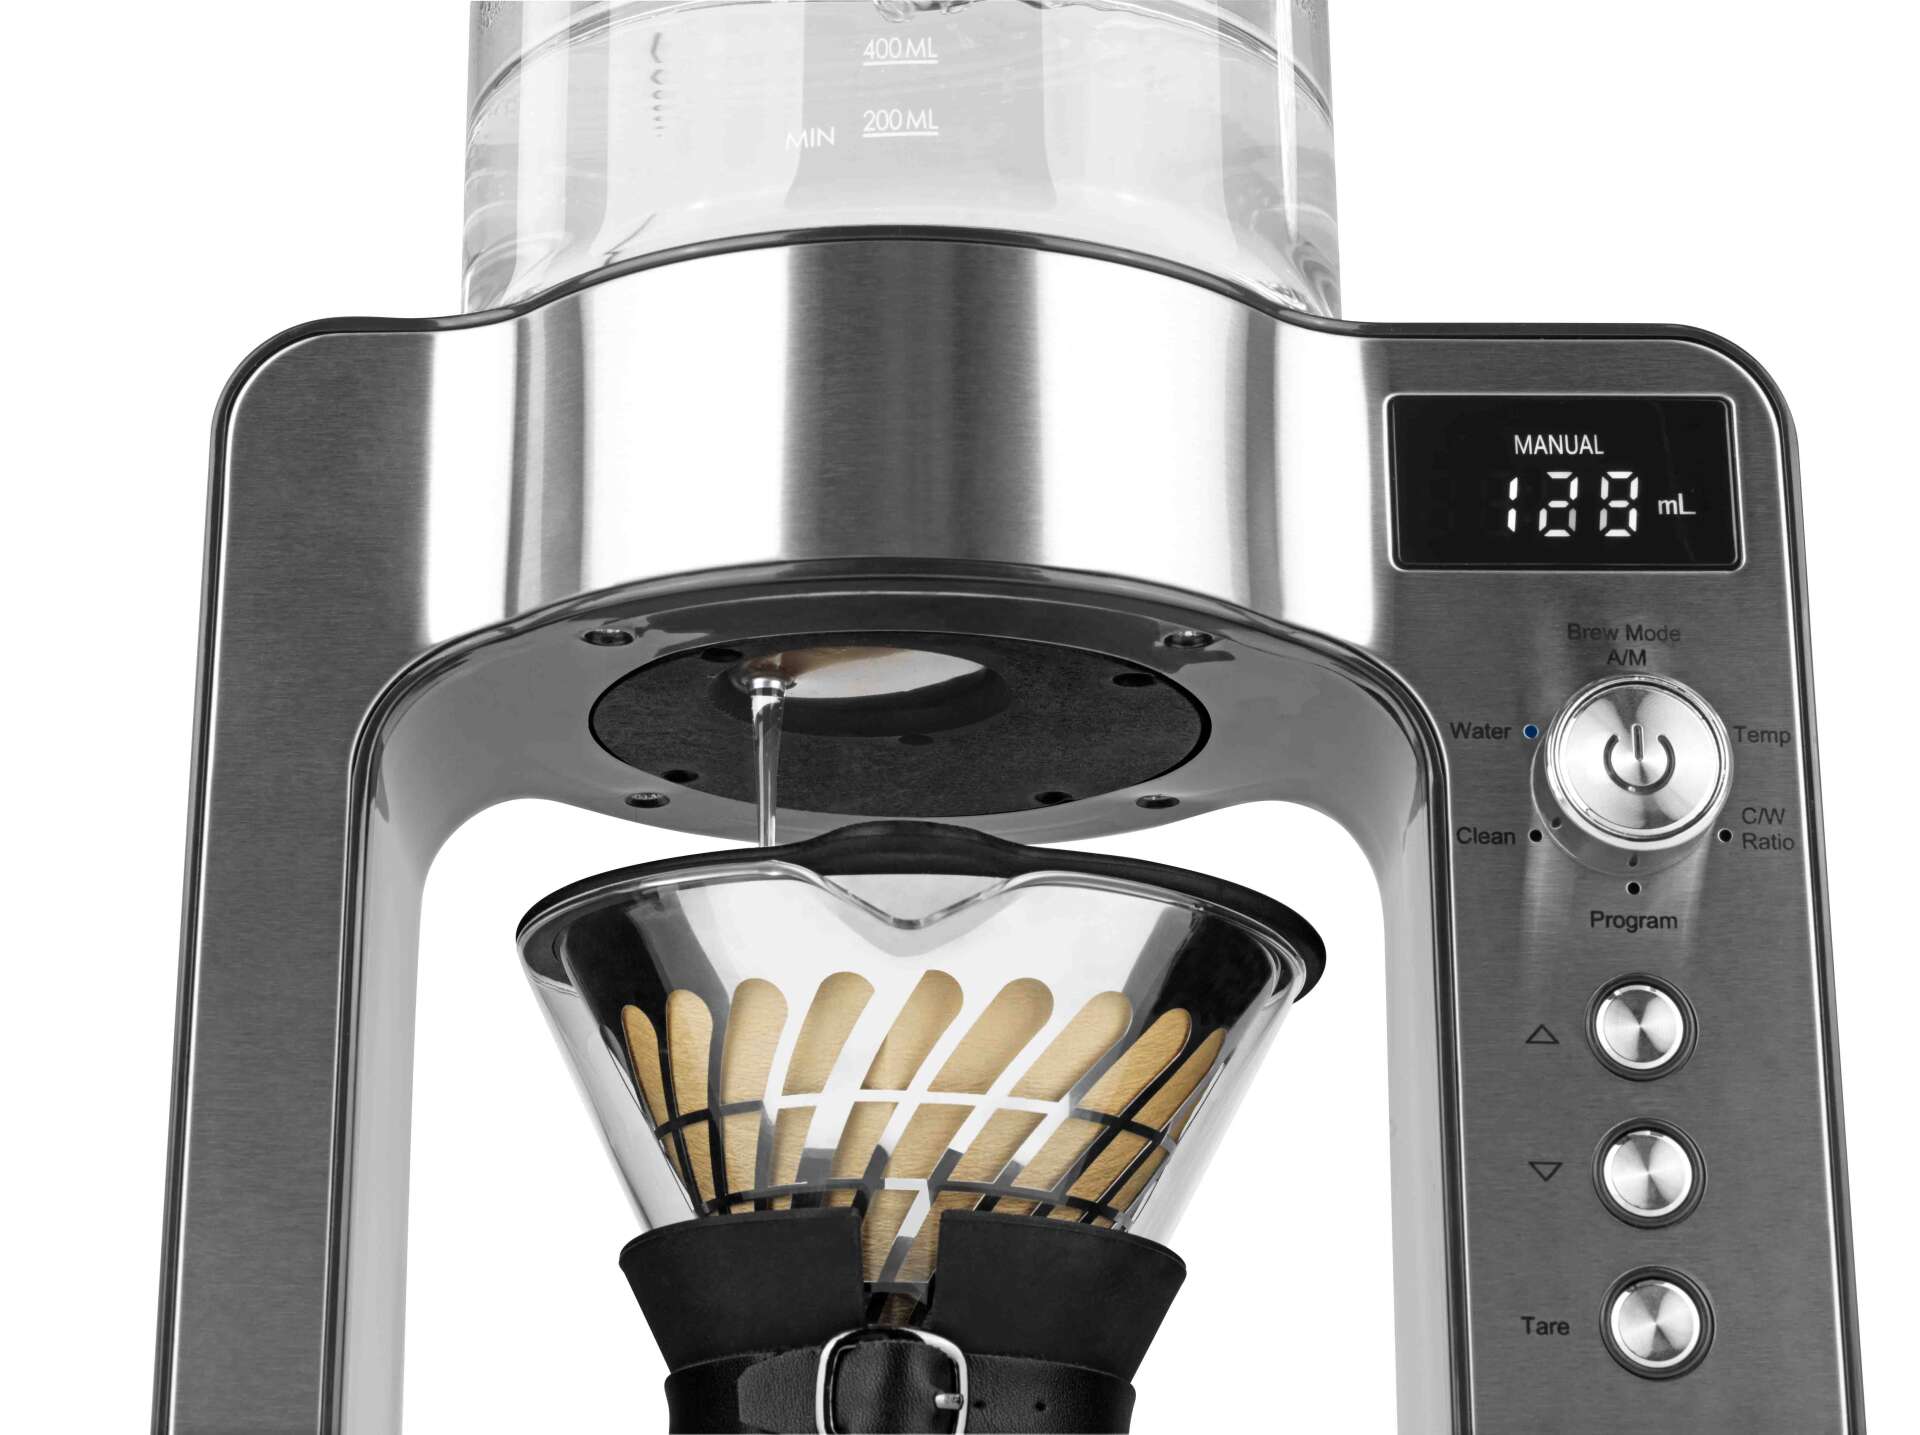 Beem filteres kávéfőző gép pour over - mérleggel